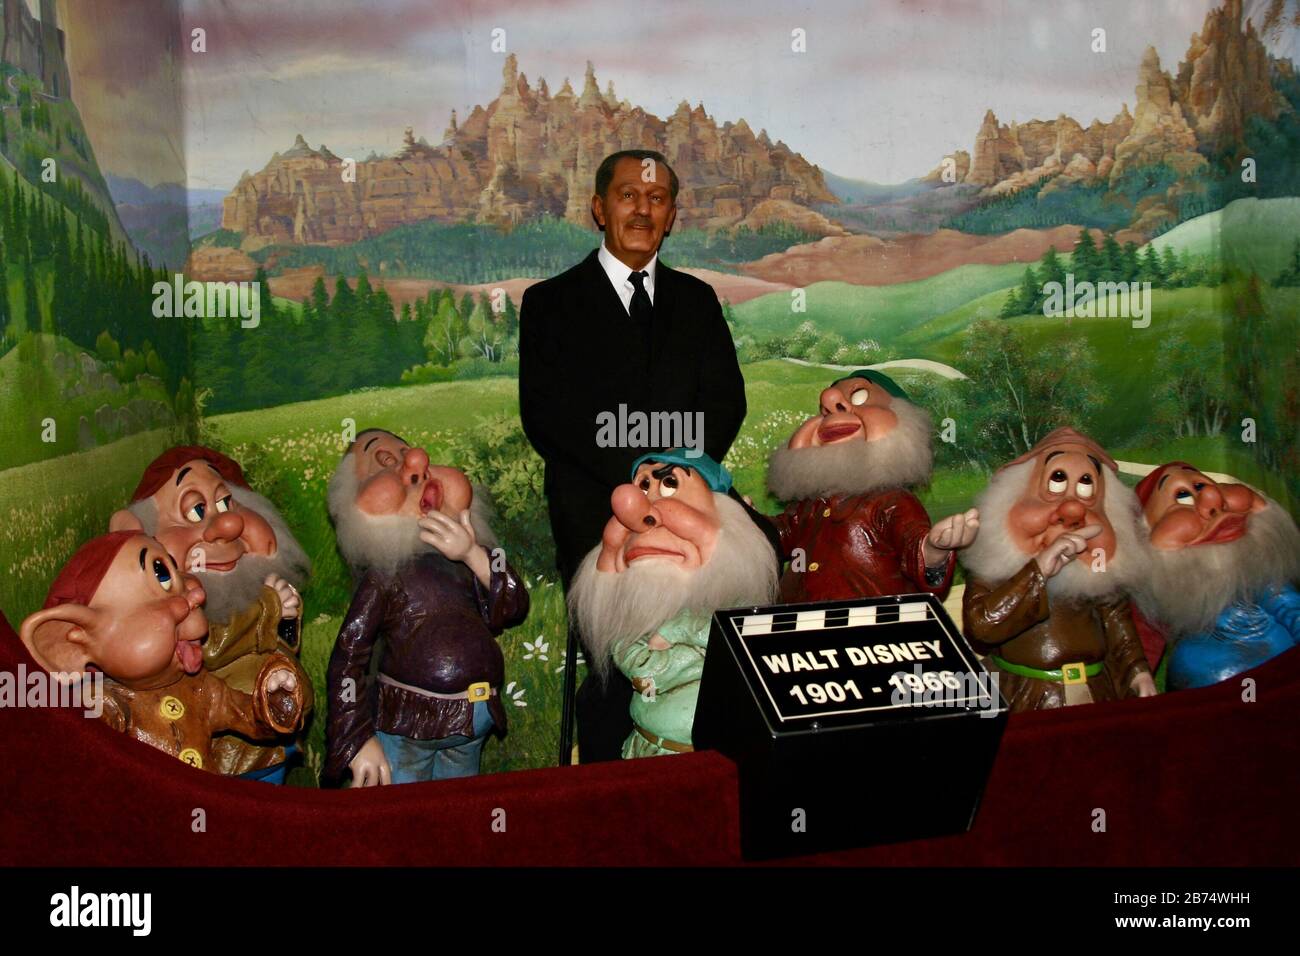 SAN ANTONIO, VEREINIGTE STAATEN - 27. September 2006: Wachsfiguren-Tableau von Walt Disney und den sieben Zwergen. Stockfoto